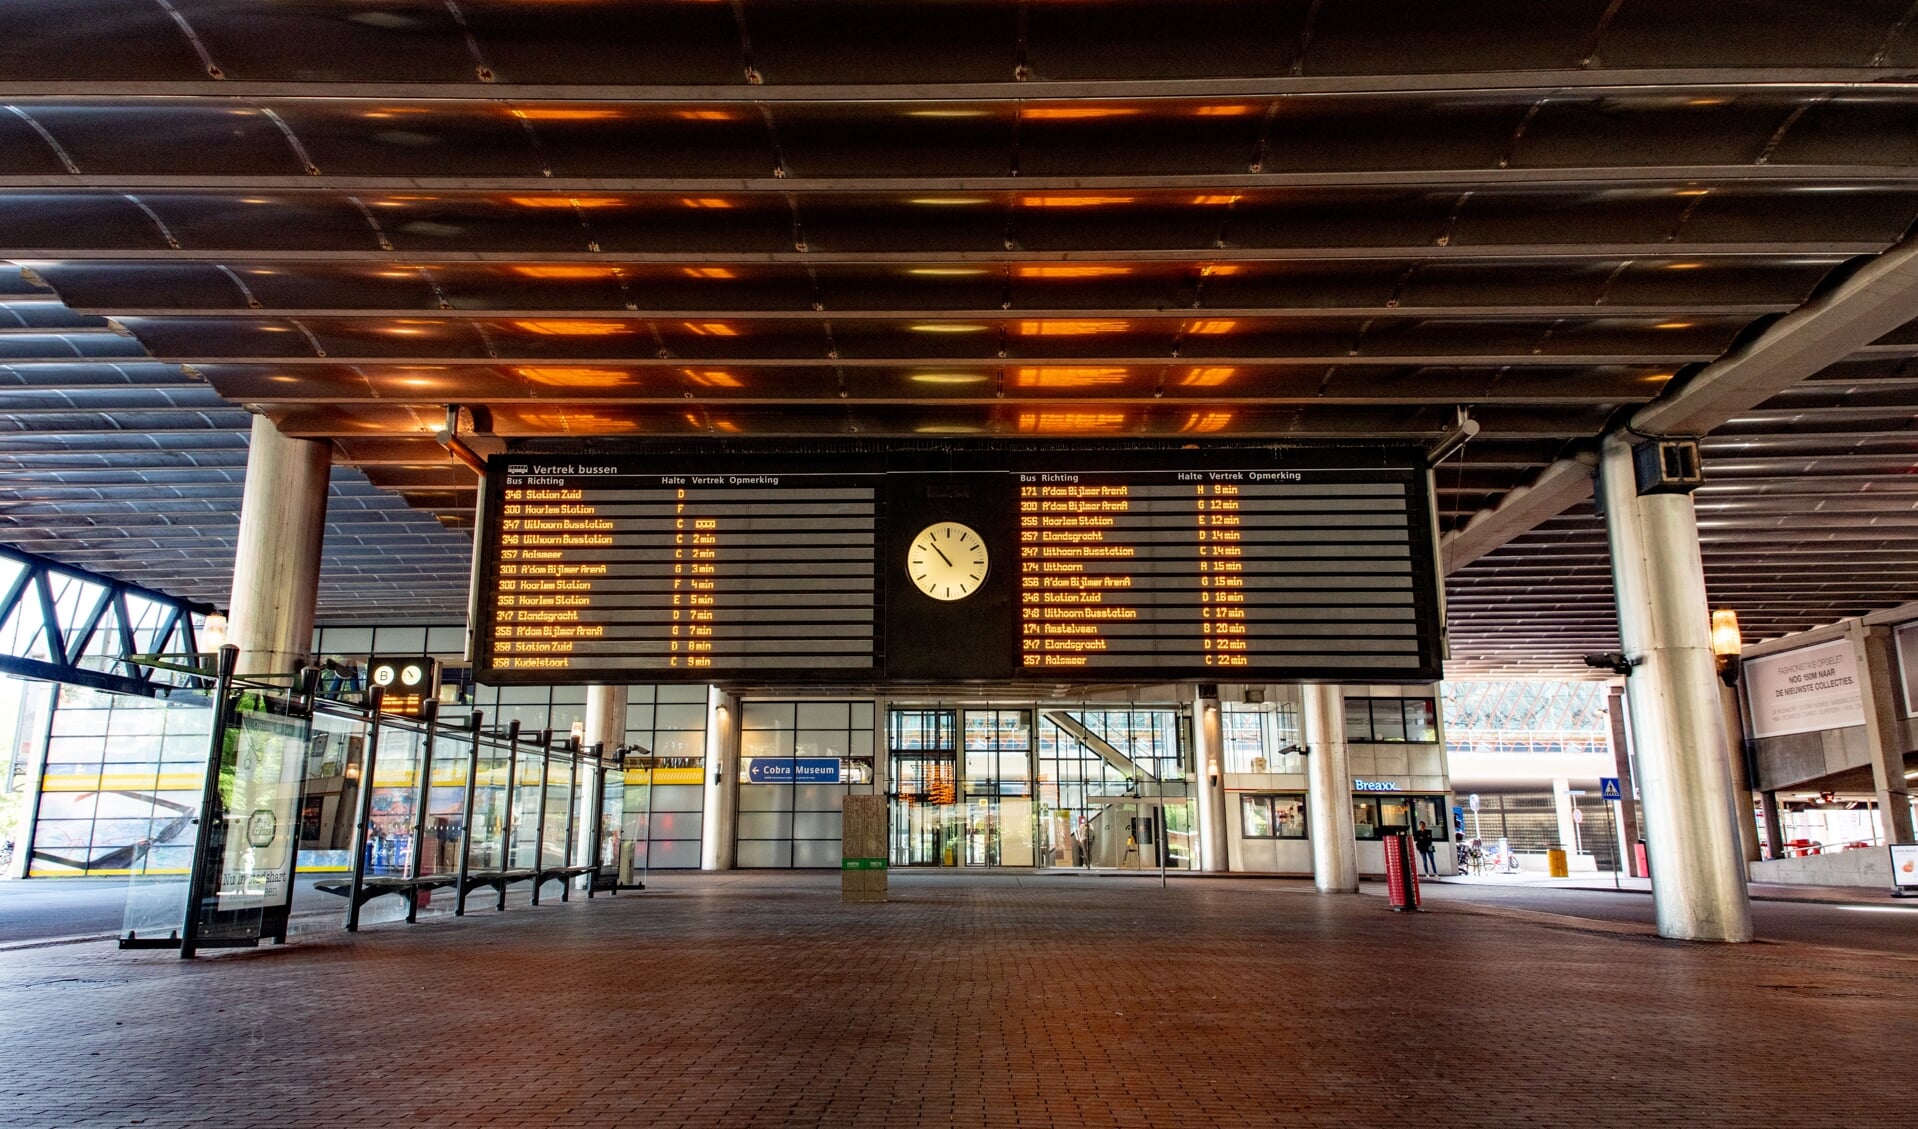 Busstation Amstelveen ligt aan de westkant van het Stadshart, terwijl de eindhalte van tramlijn 5 zich aan de oostkant bevindt.